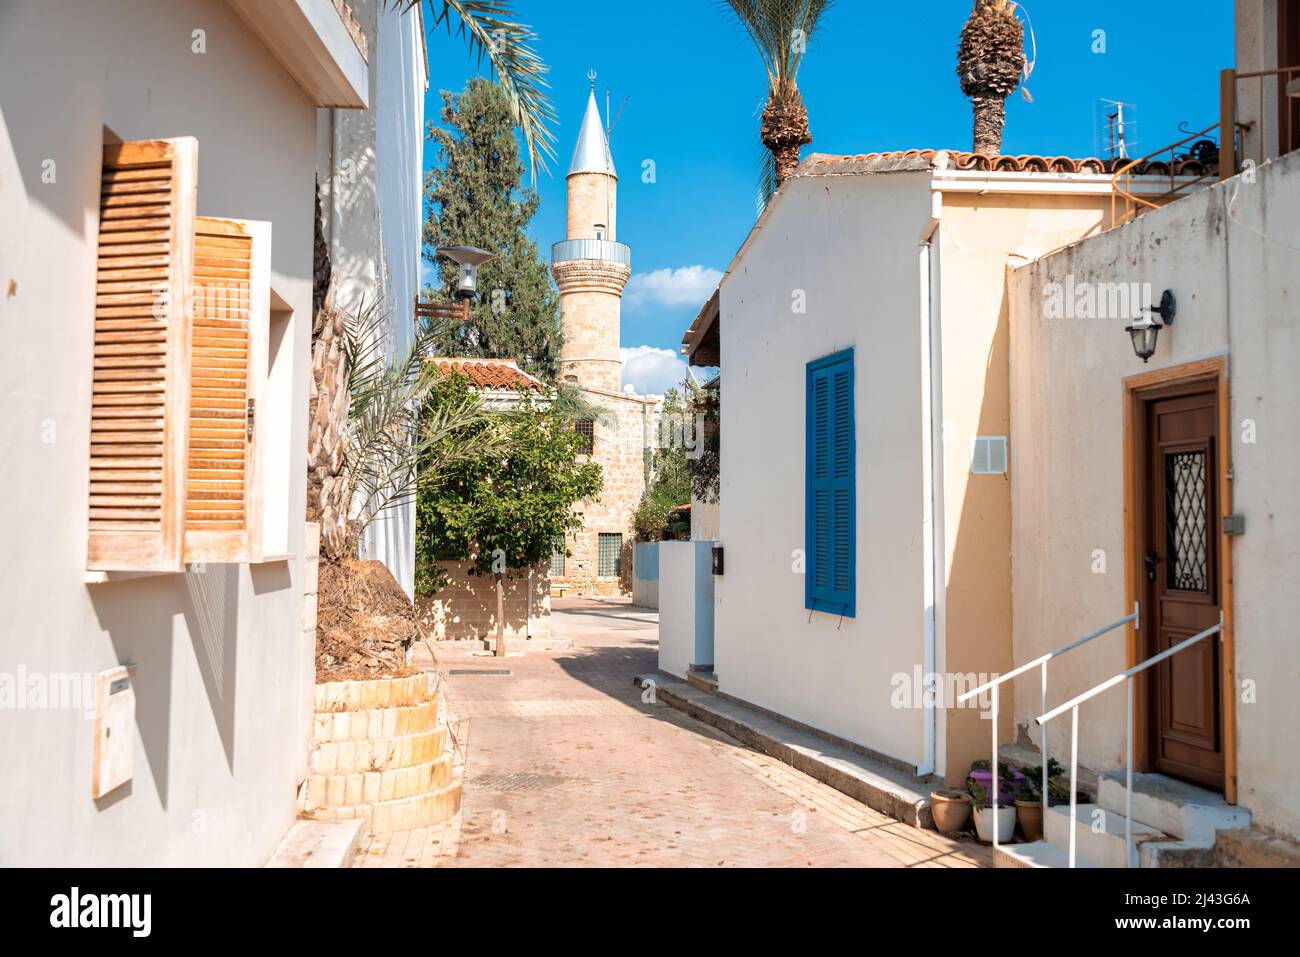 Vue sur un quartier de la vieille ville de Nicosie, Chypre Banque D'Images